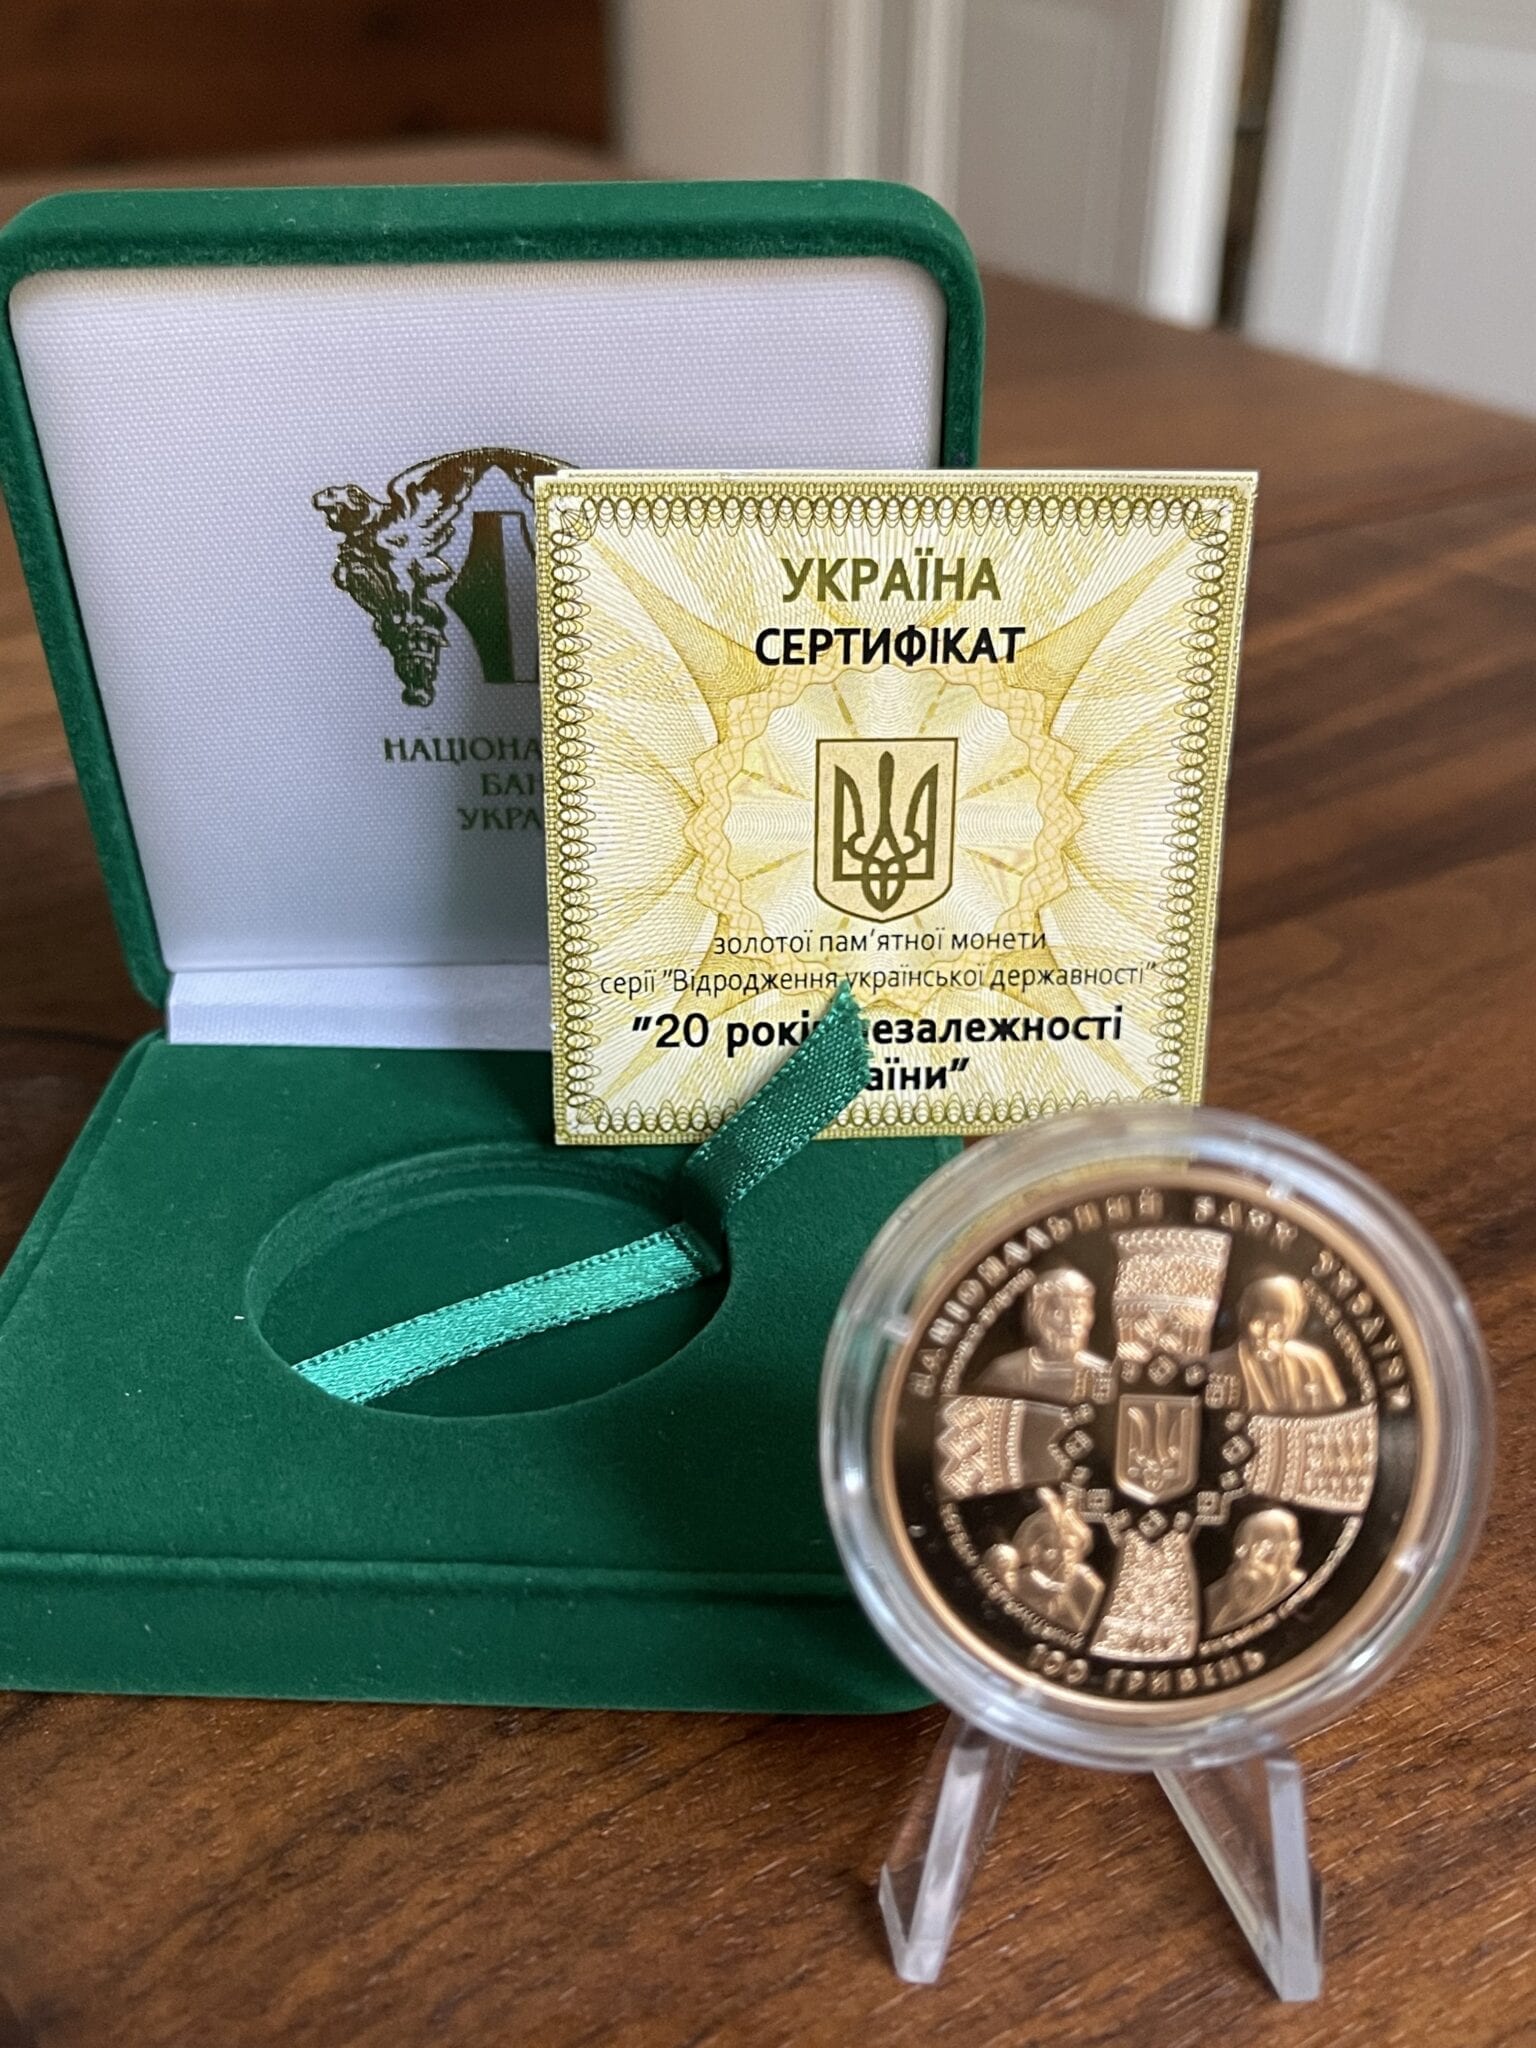 Ukraine Goldmünze 20 Jahre Unabhängigkeit Zertifikat